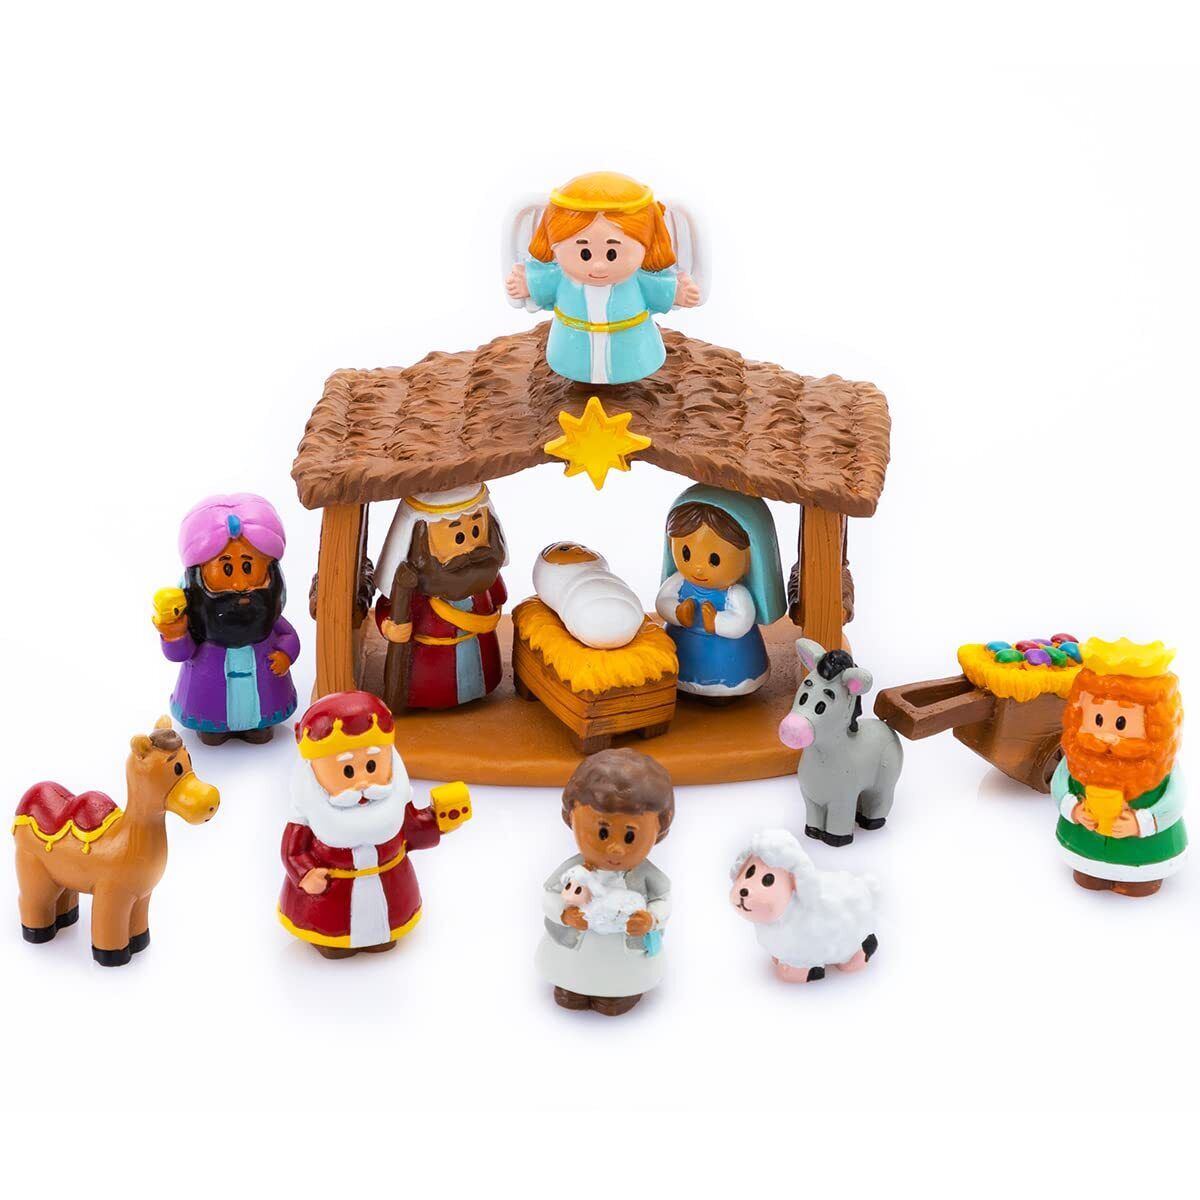 Syncfun Christmas Little Nativity Playset Christmas Story Manger Scene for Kids